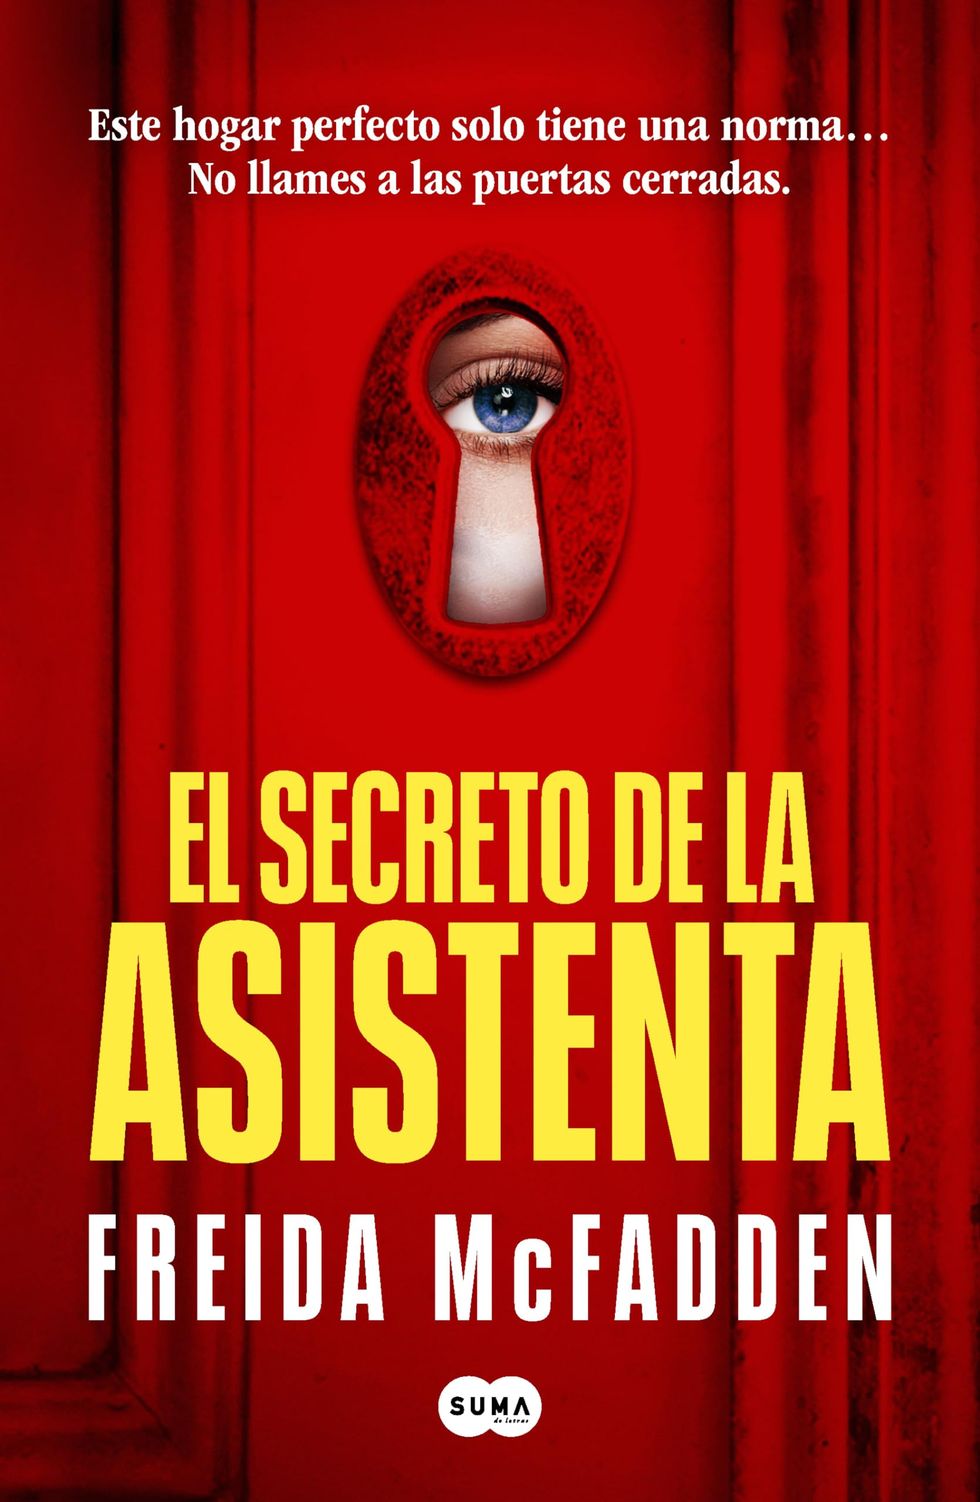 'El secreto de la asistenta'